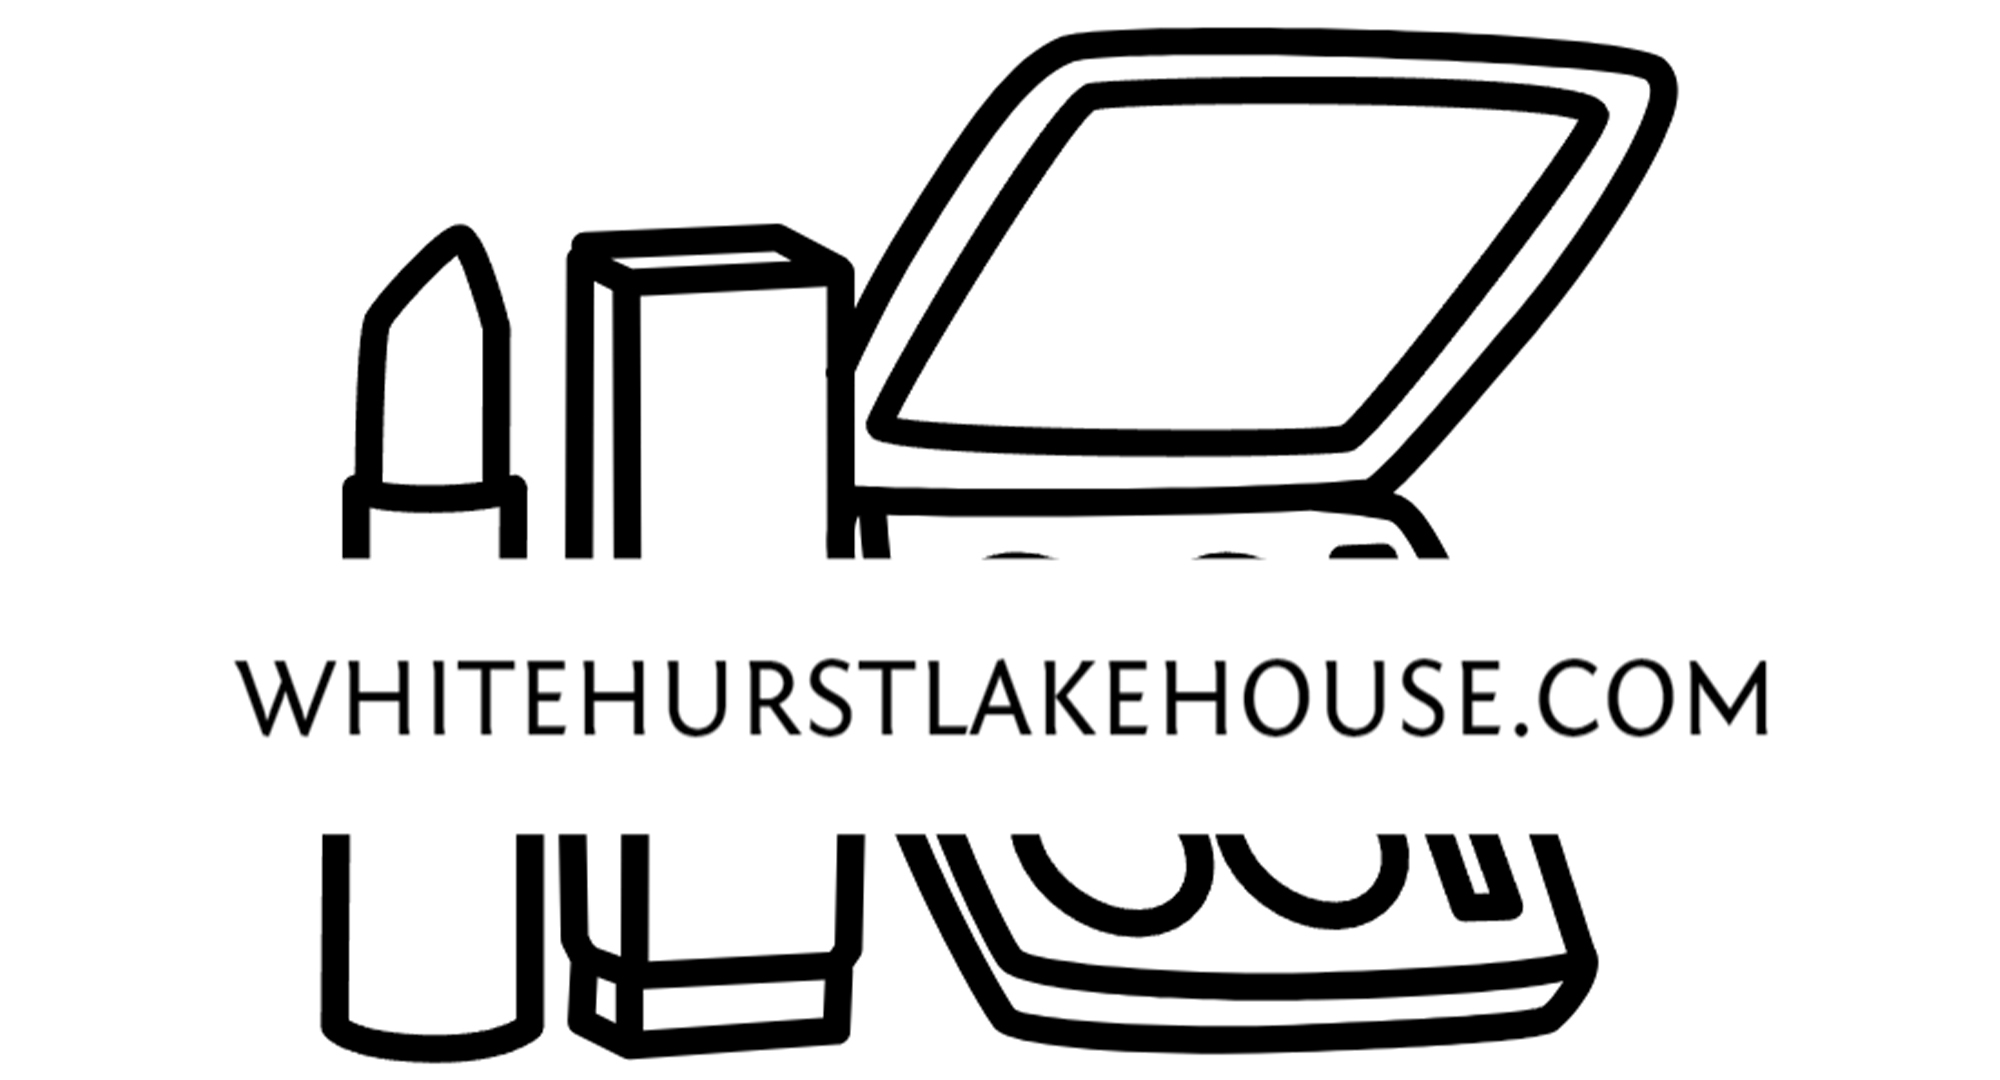 whitehurstlakehouse.com